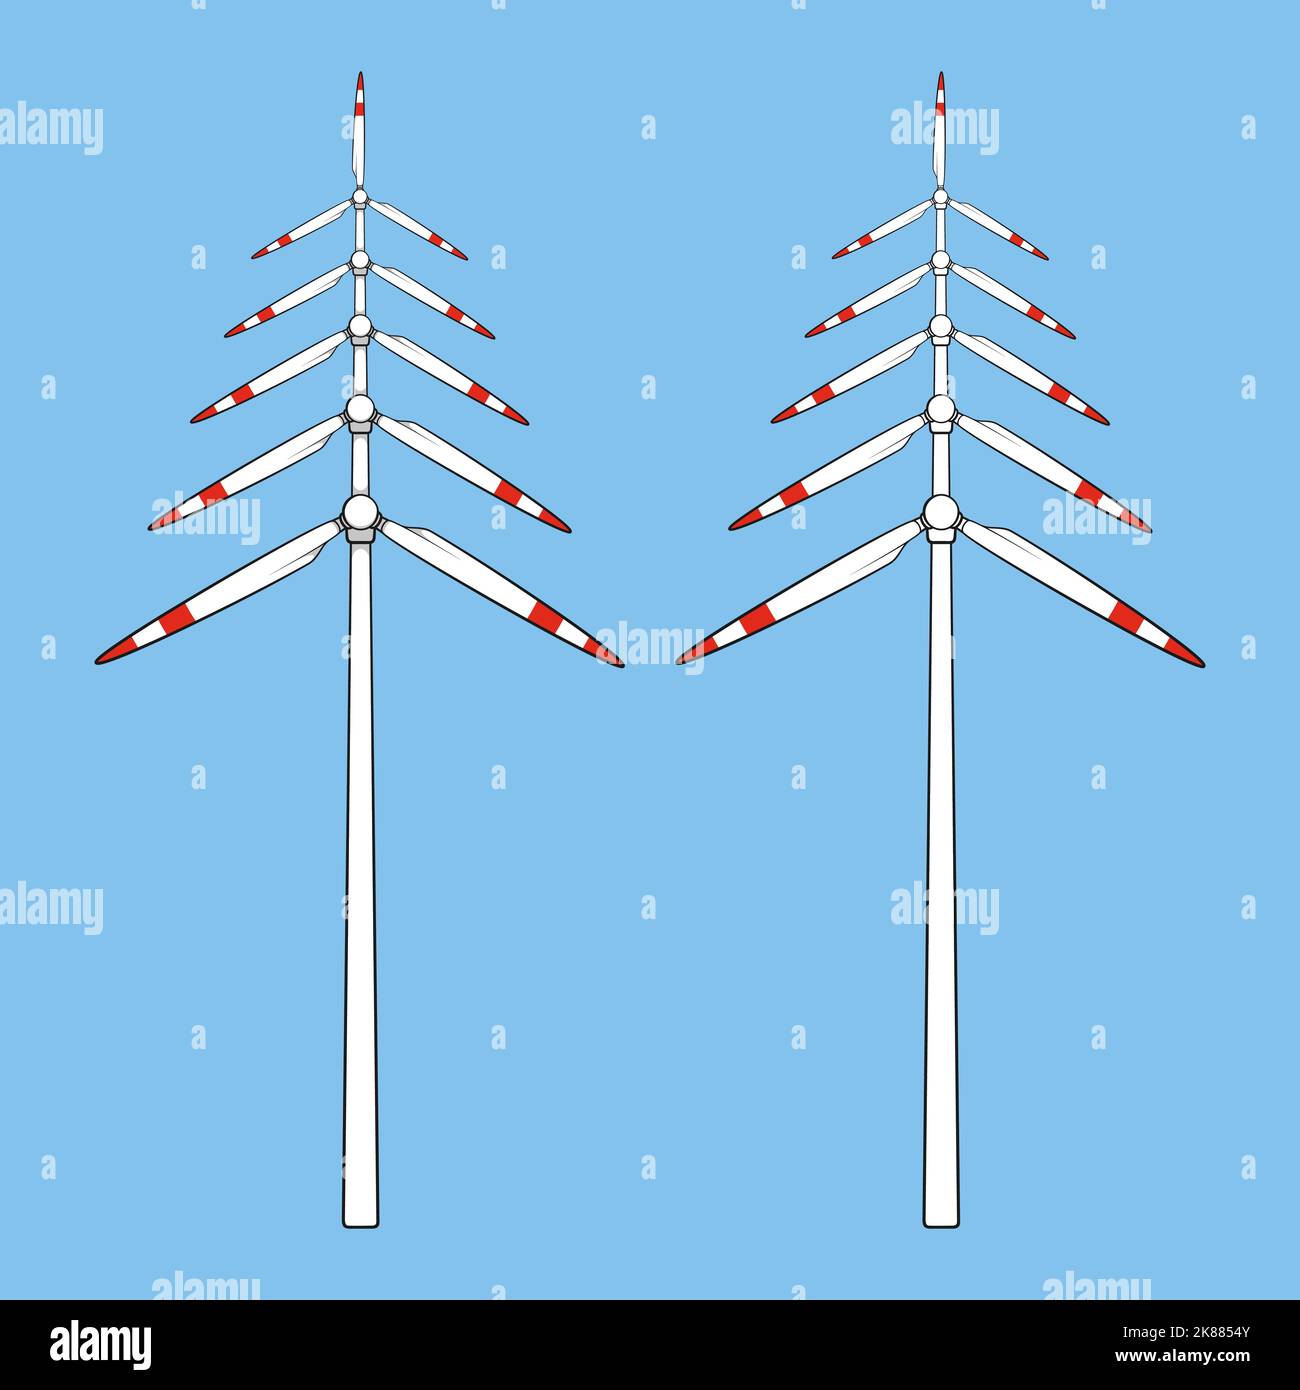 Ensemble d'illustrations en couleur avec arbre de Noël en hélices, pales de moulin à vent, éolienne. Objets vectoriels isolés. Illustration de Vecteur